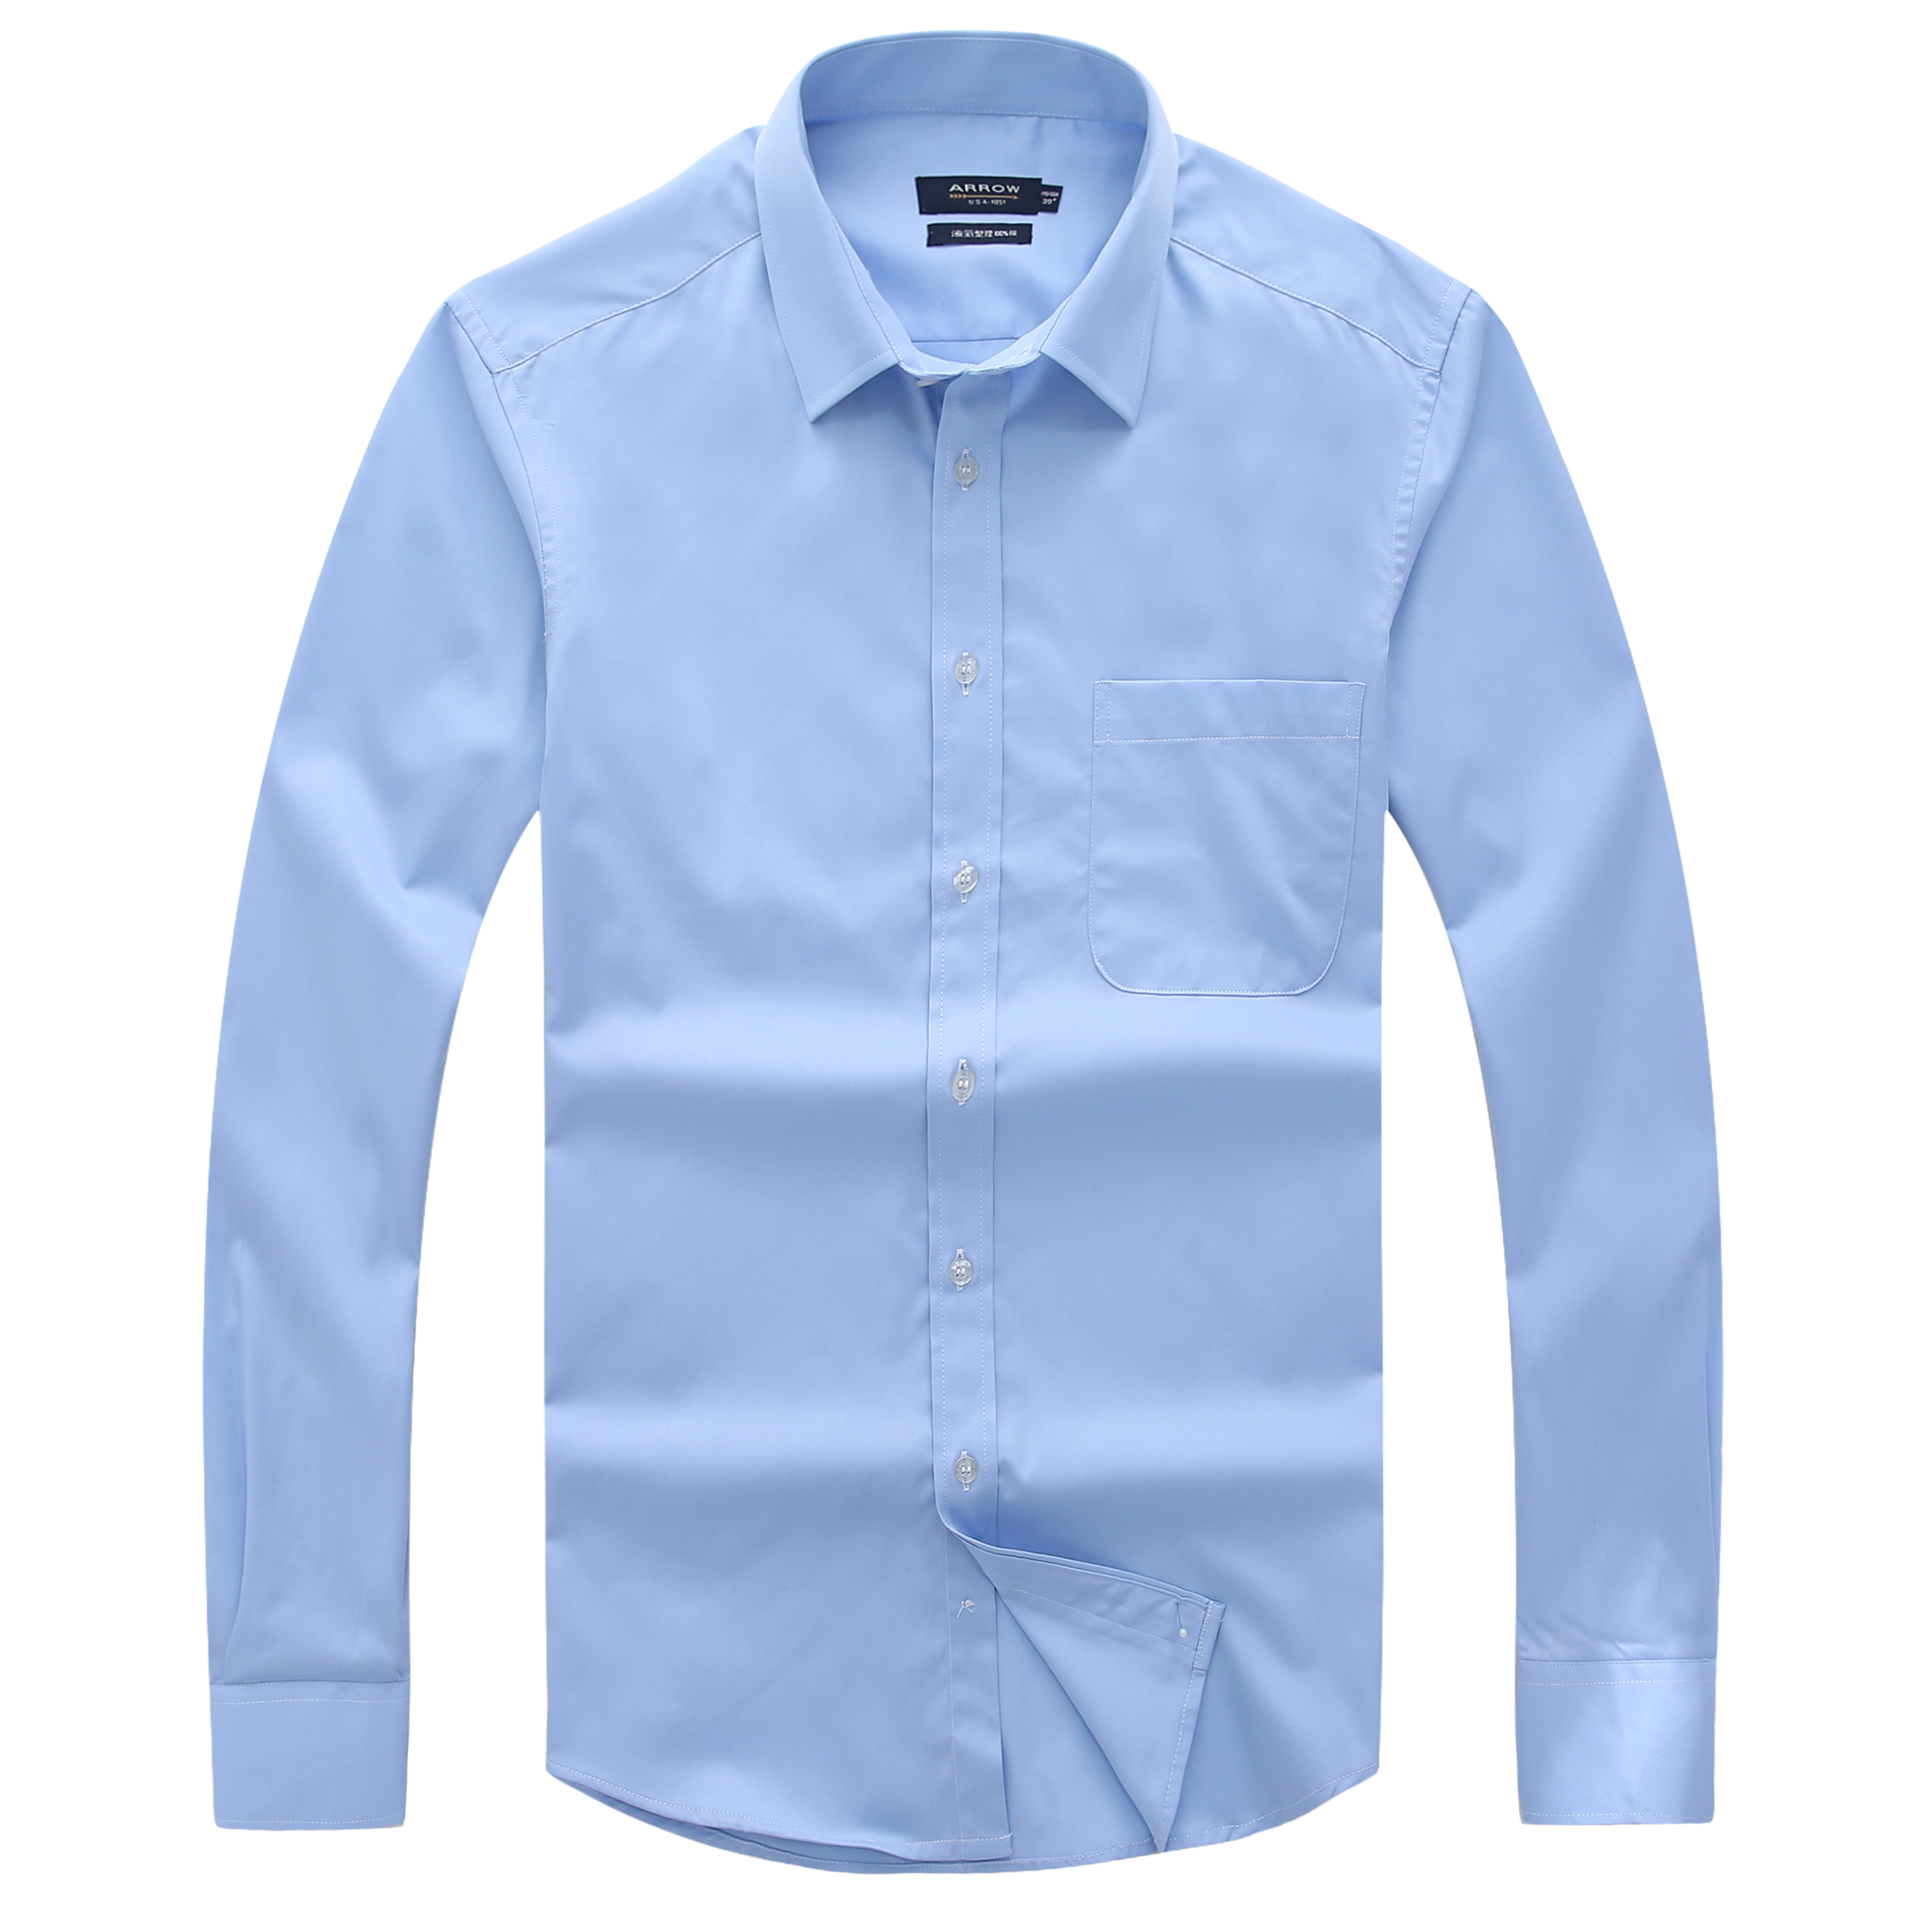 专柜正品ARROW美国箭牌商务正装男士衬衫纯棉免烫长袖衬衣蓝衬衫